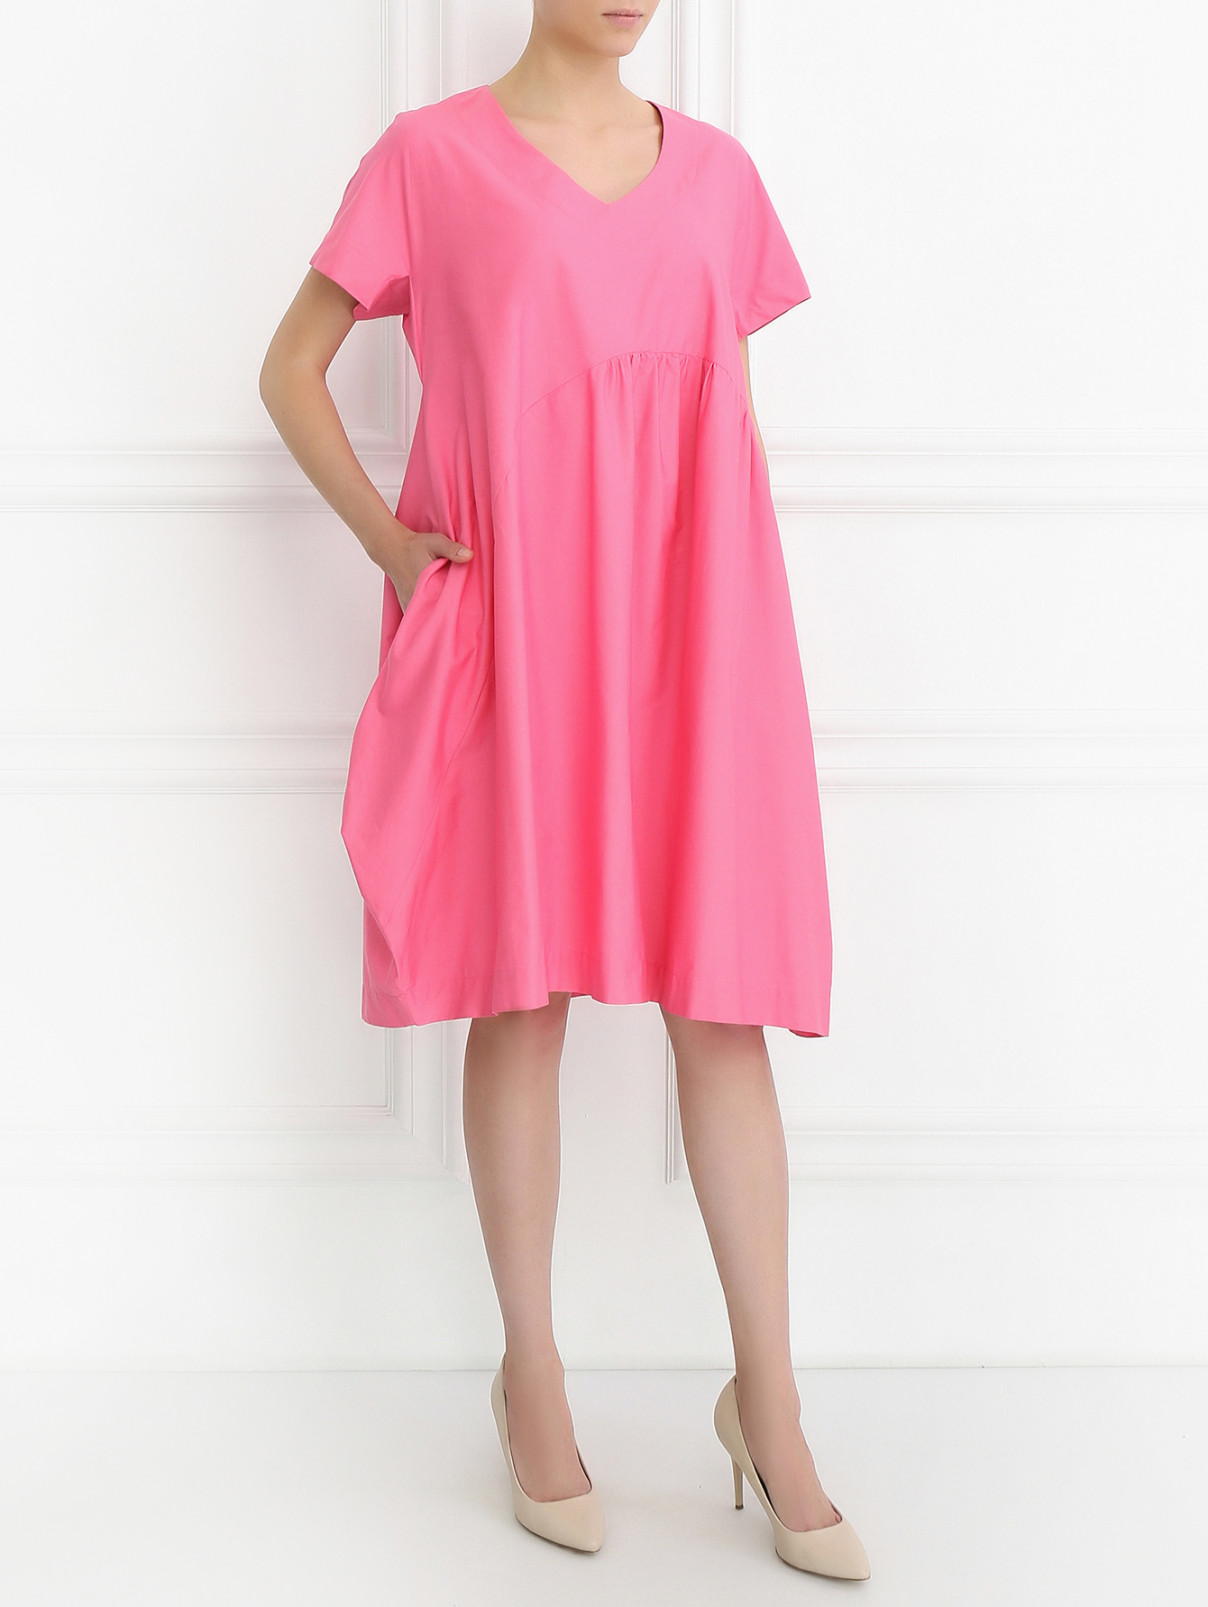 Платье из хлопка свободного кроя с карманами Isola Marras  –  Модель Общий вид  – Цвет:  Розовый